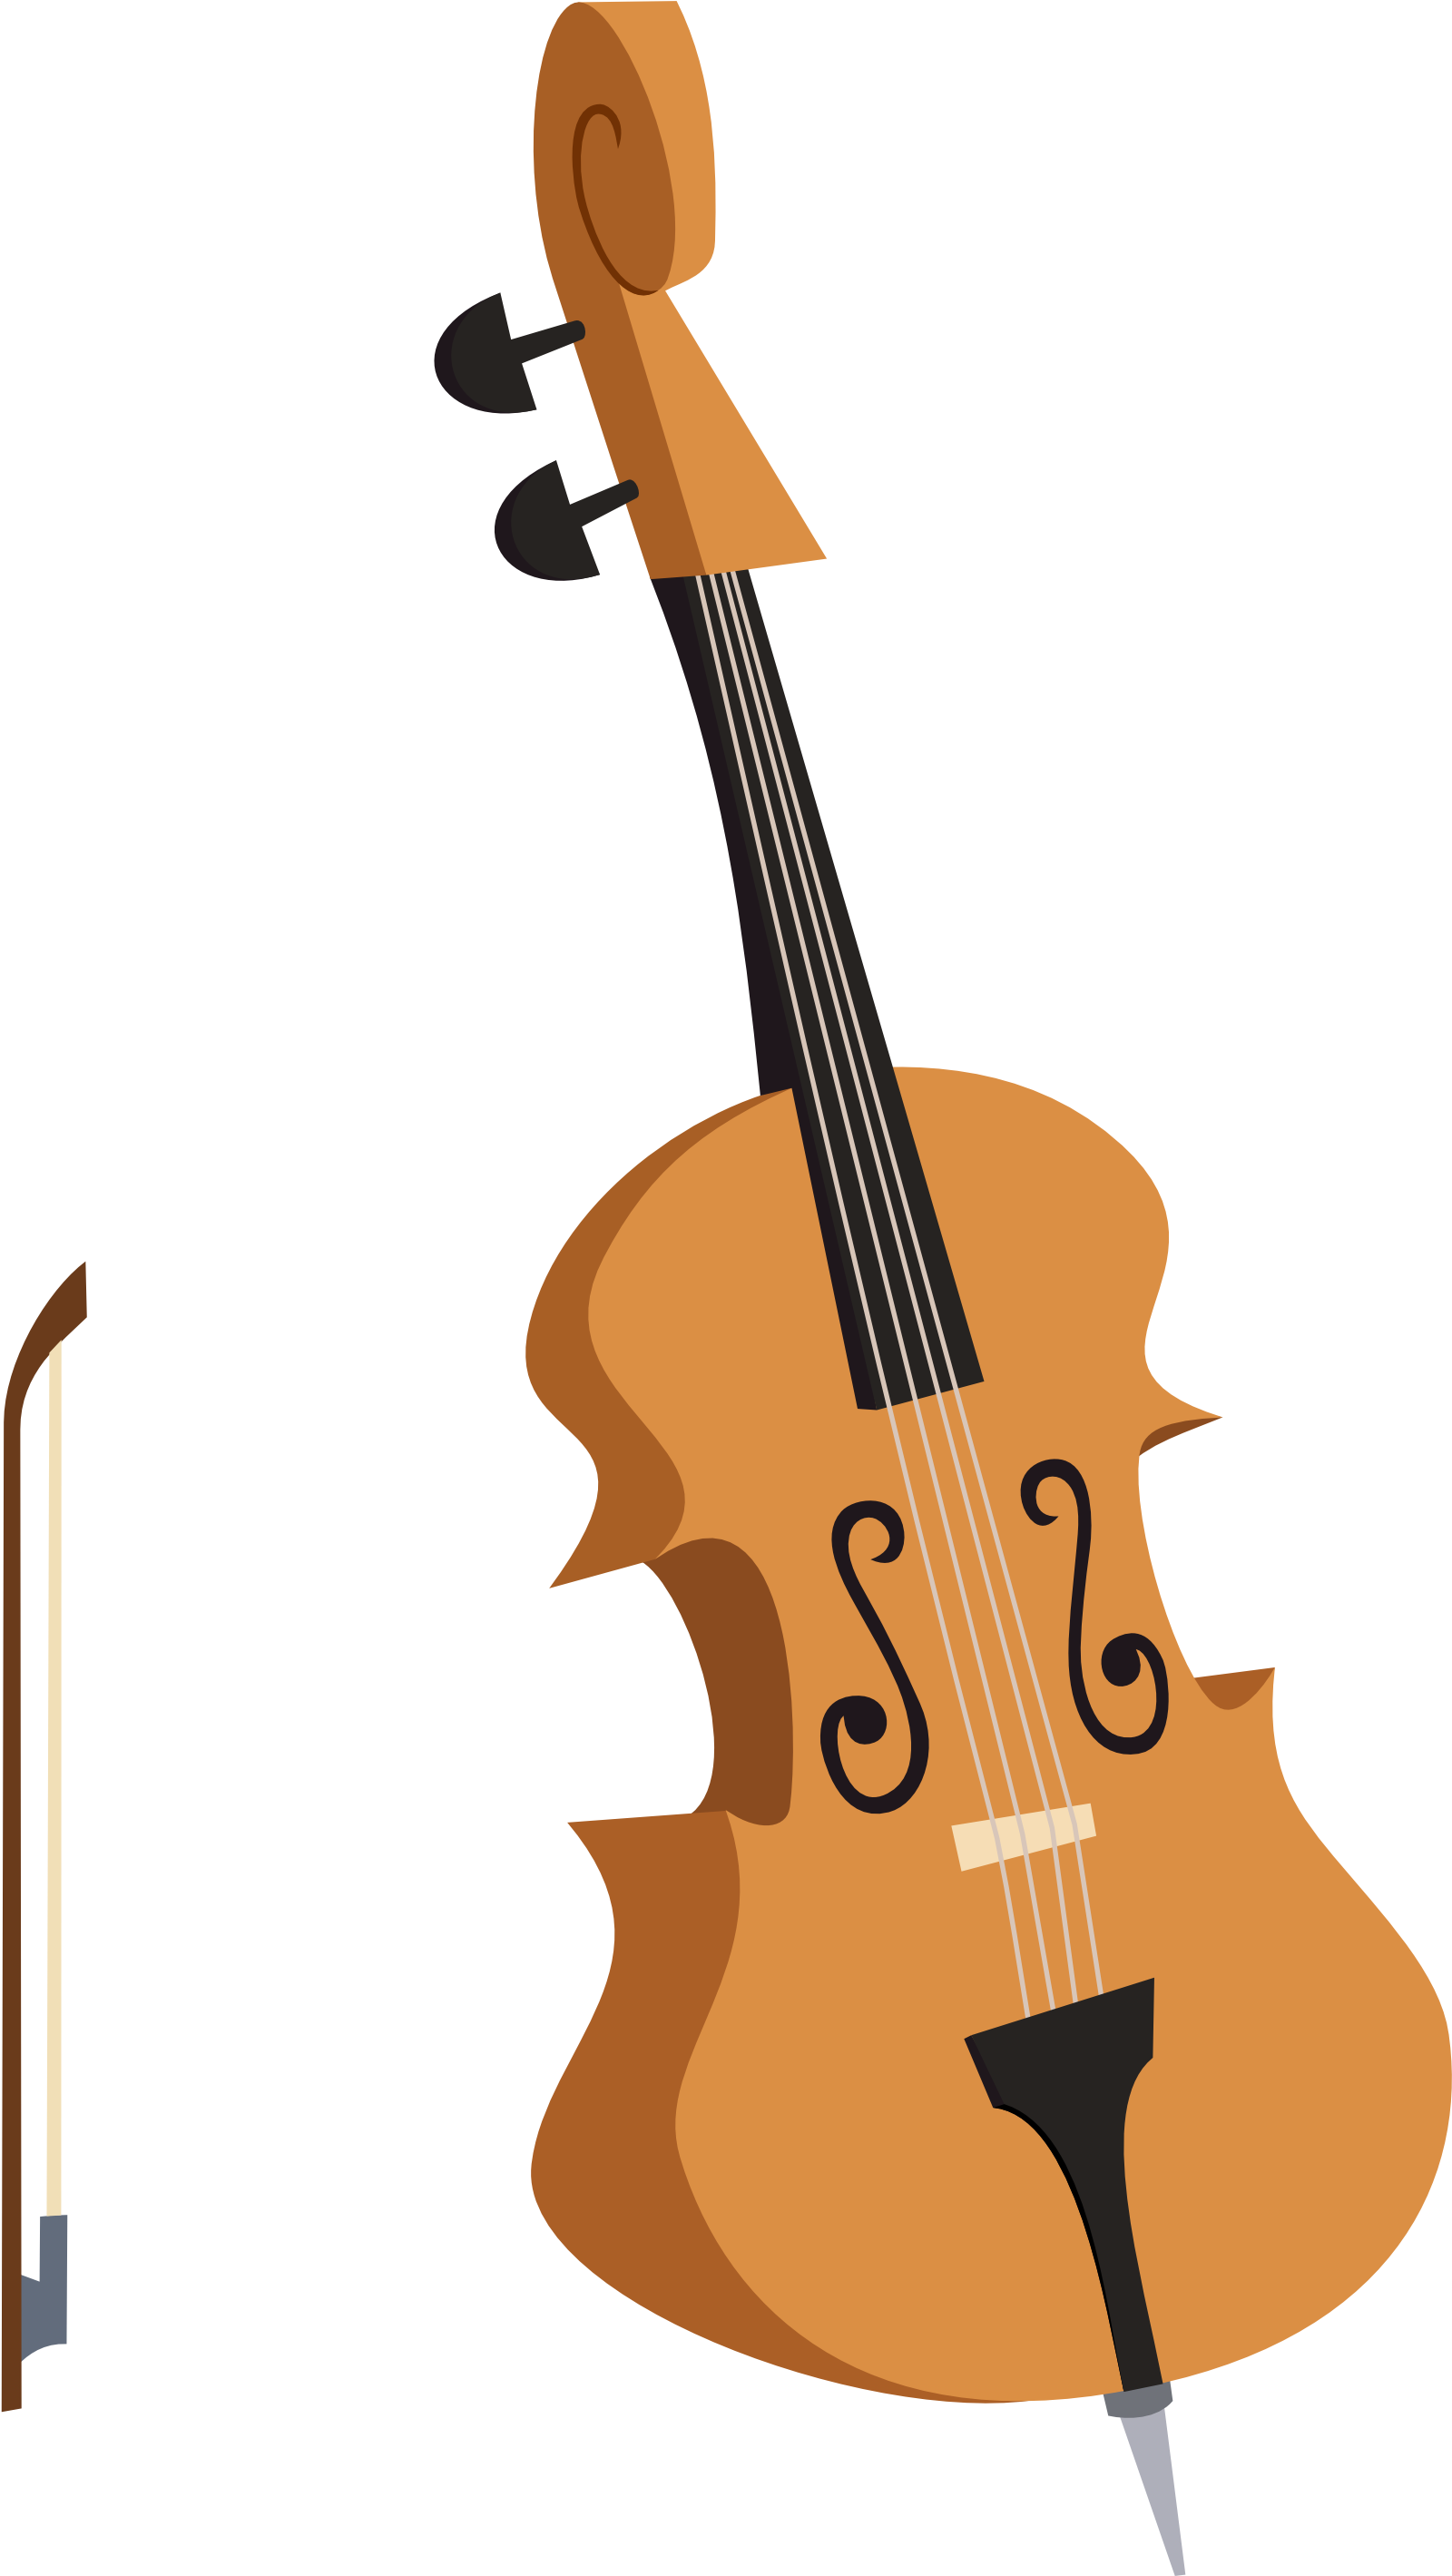 A Cello With A Bow